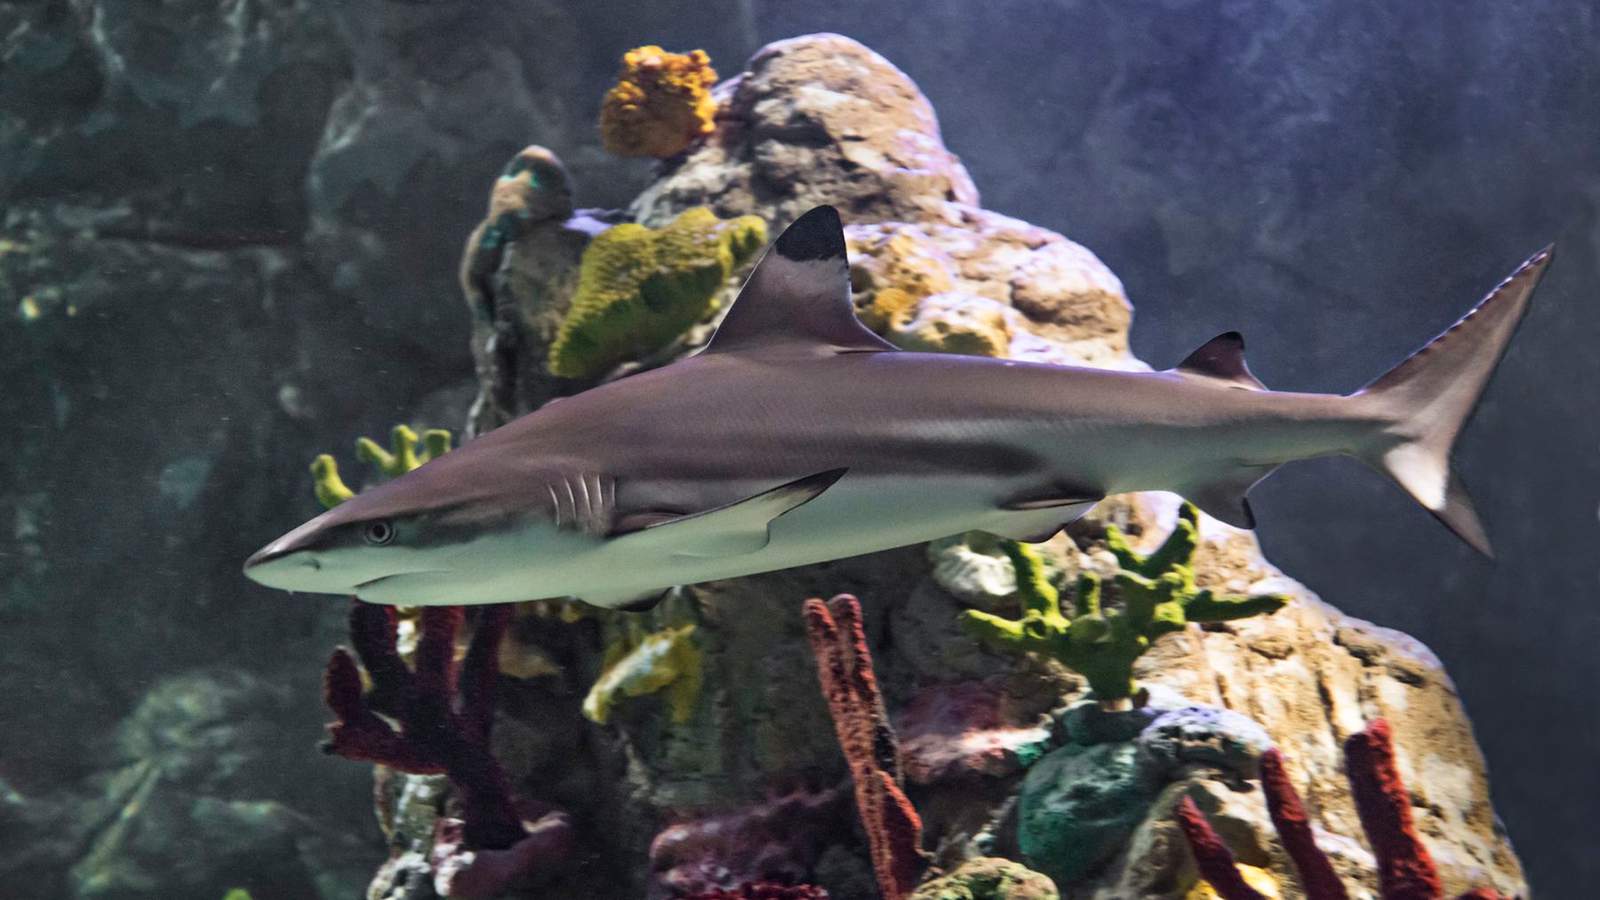 SEA LIFE Orlando aquarium sinks its teeth into shark week